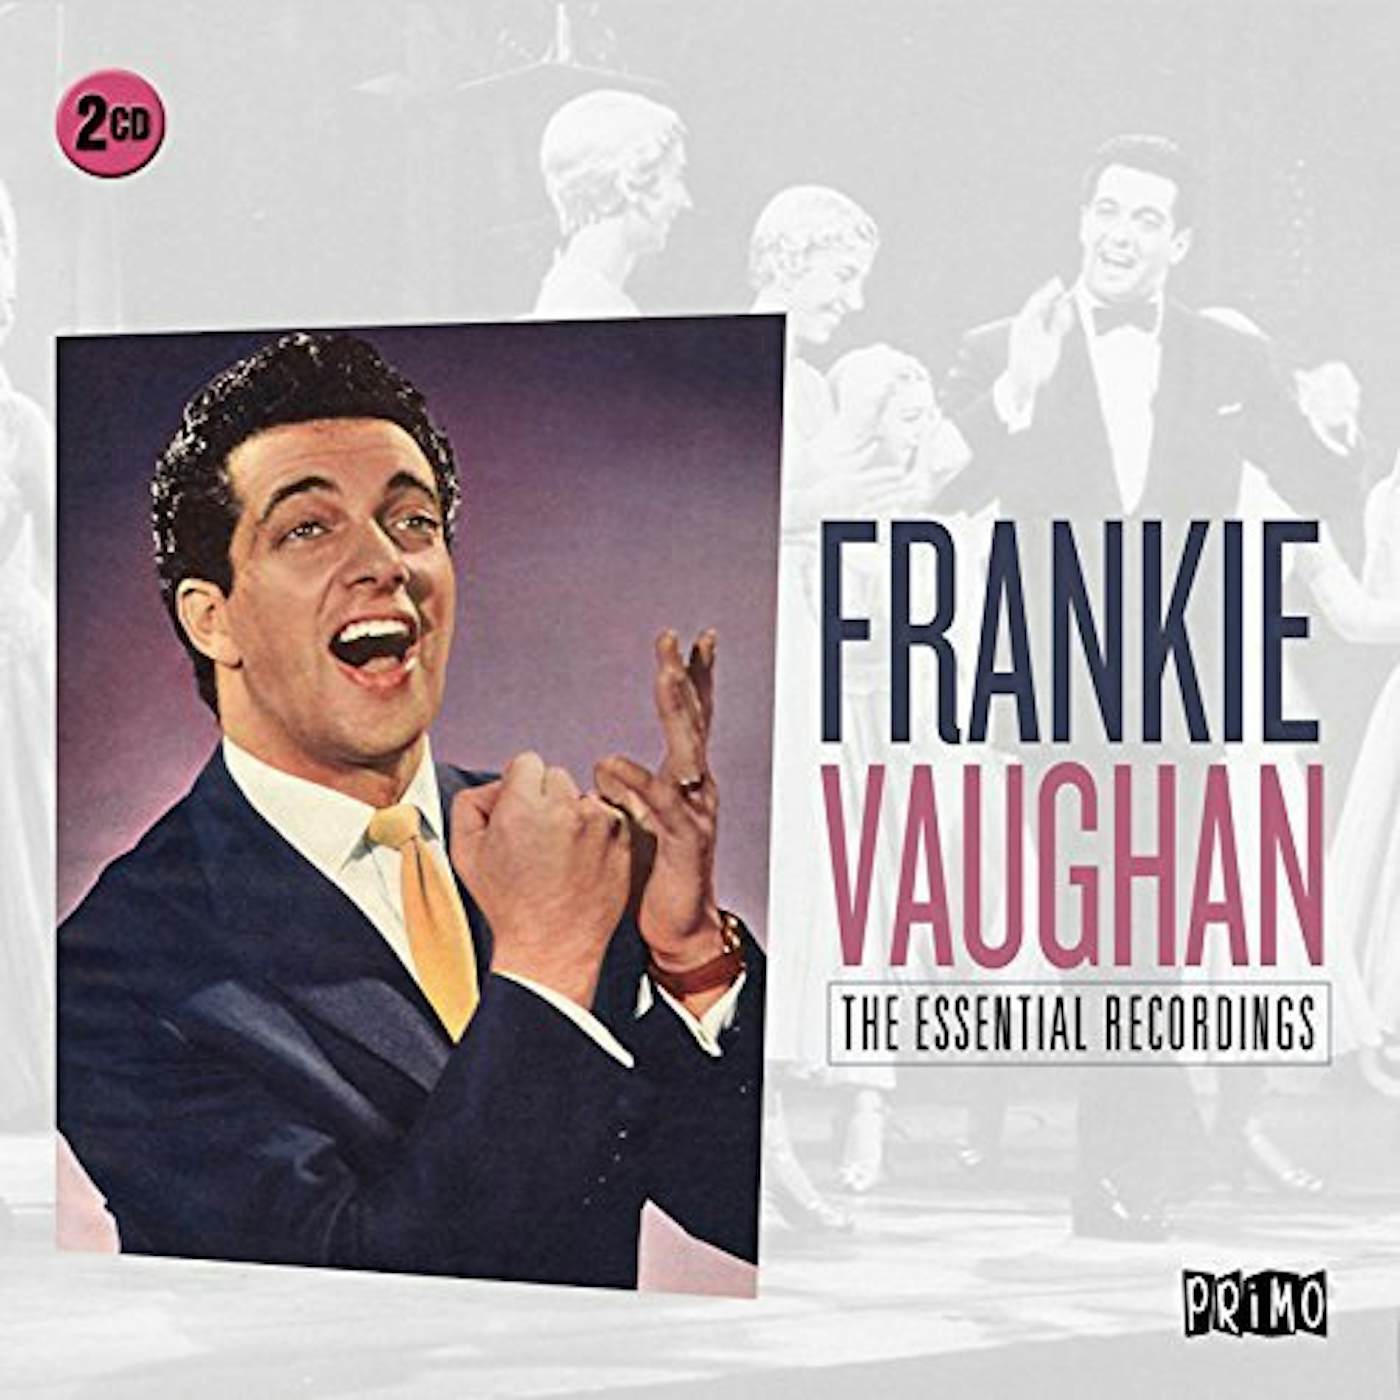 Frankie Vaughan ESSENTIAL RECORDINGS CD